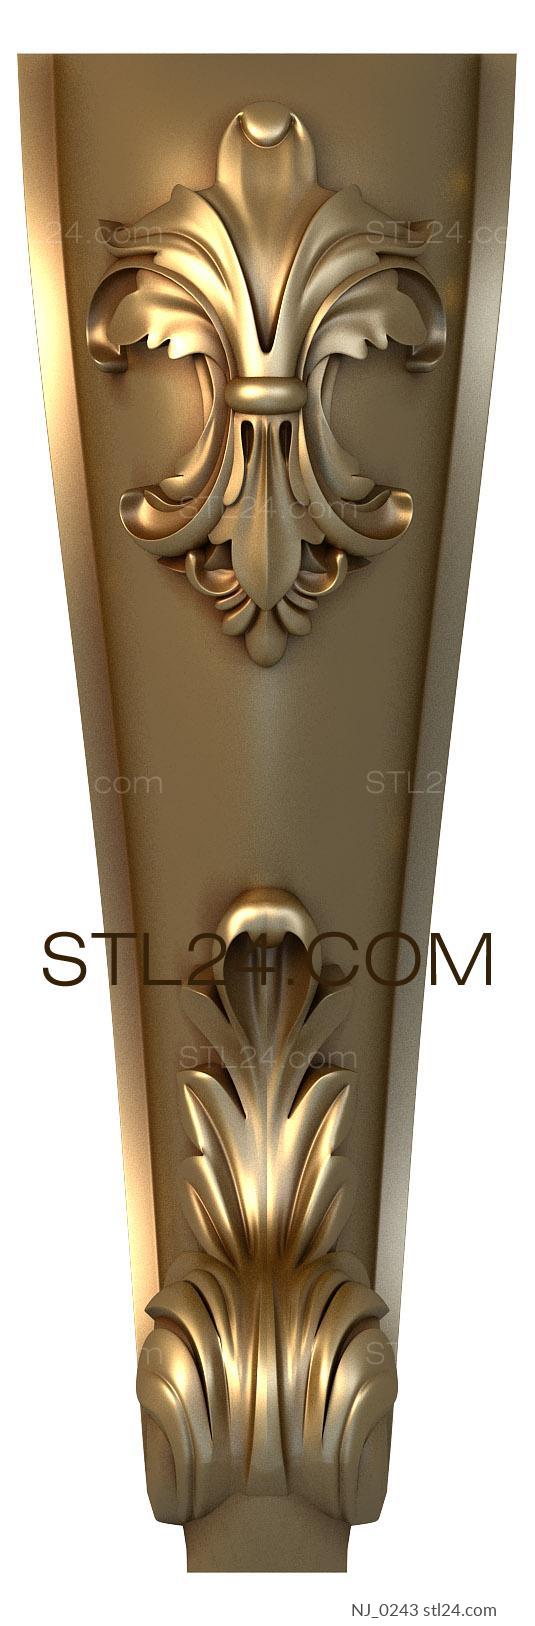 Ножки (NJ_0243) 3D модель для ЧПУ станка